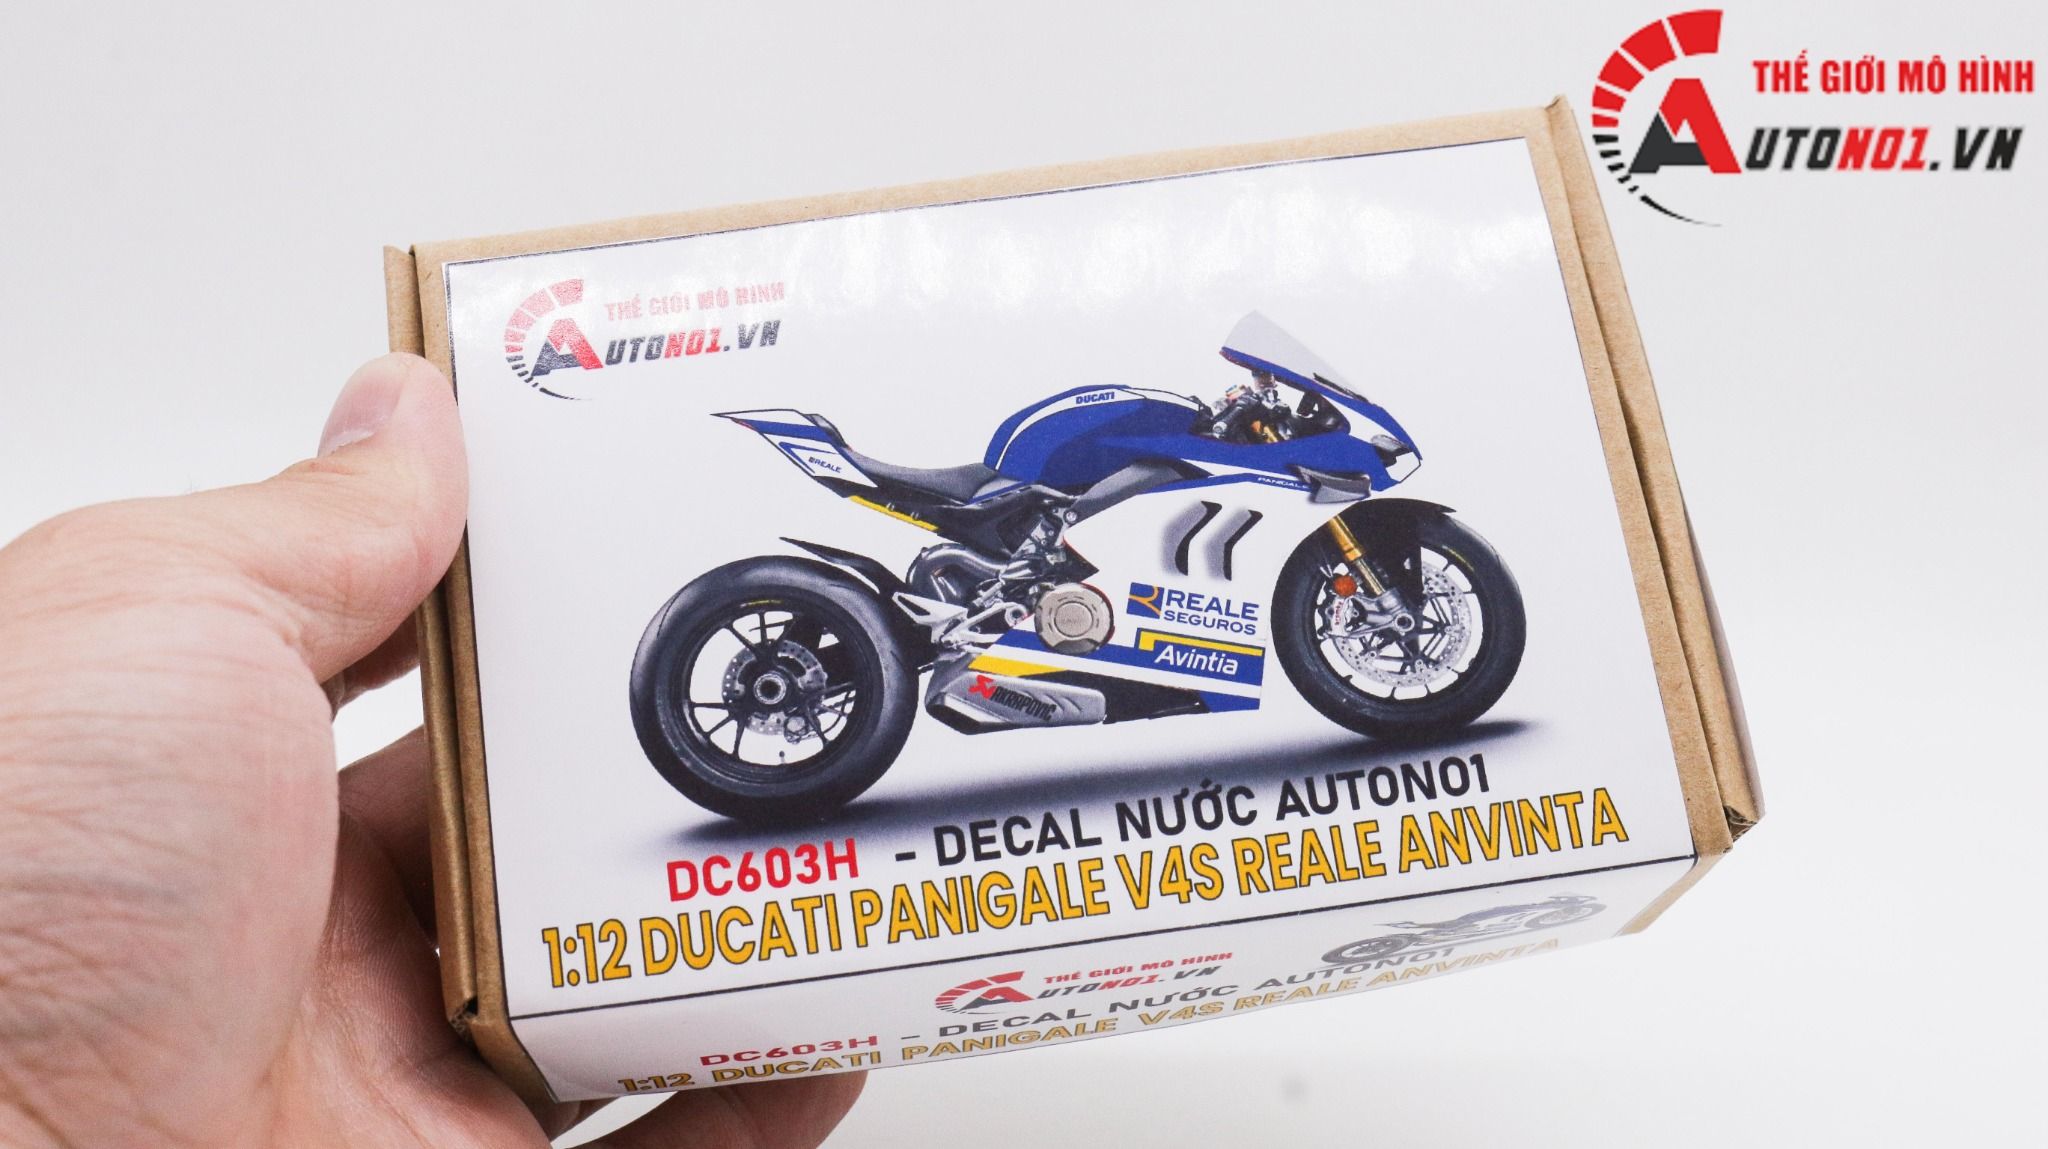  Decal nước độ Ducati Panigale V4S Reale Anvinta tỉ lệ 1:12 Autono1 DC603h 